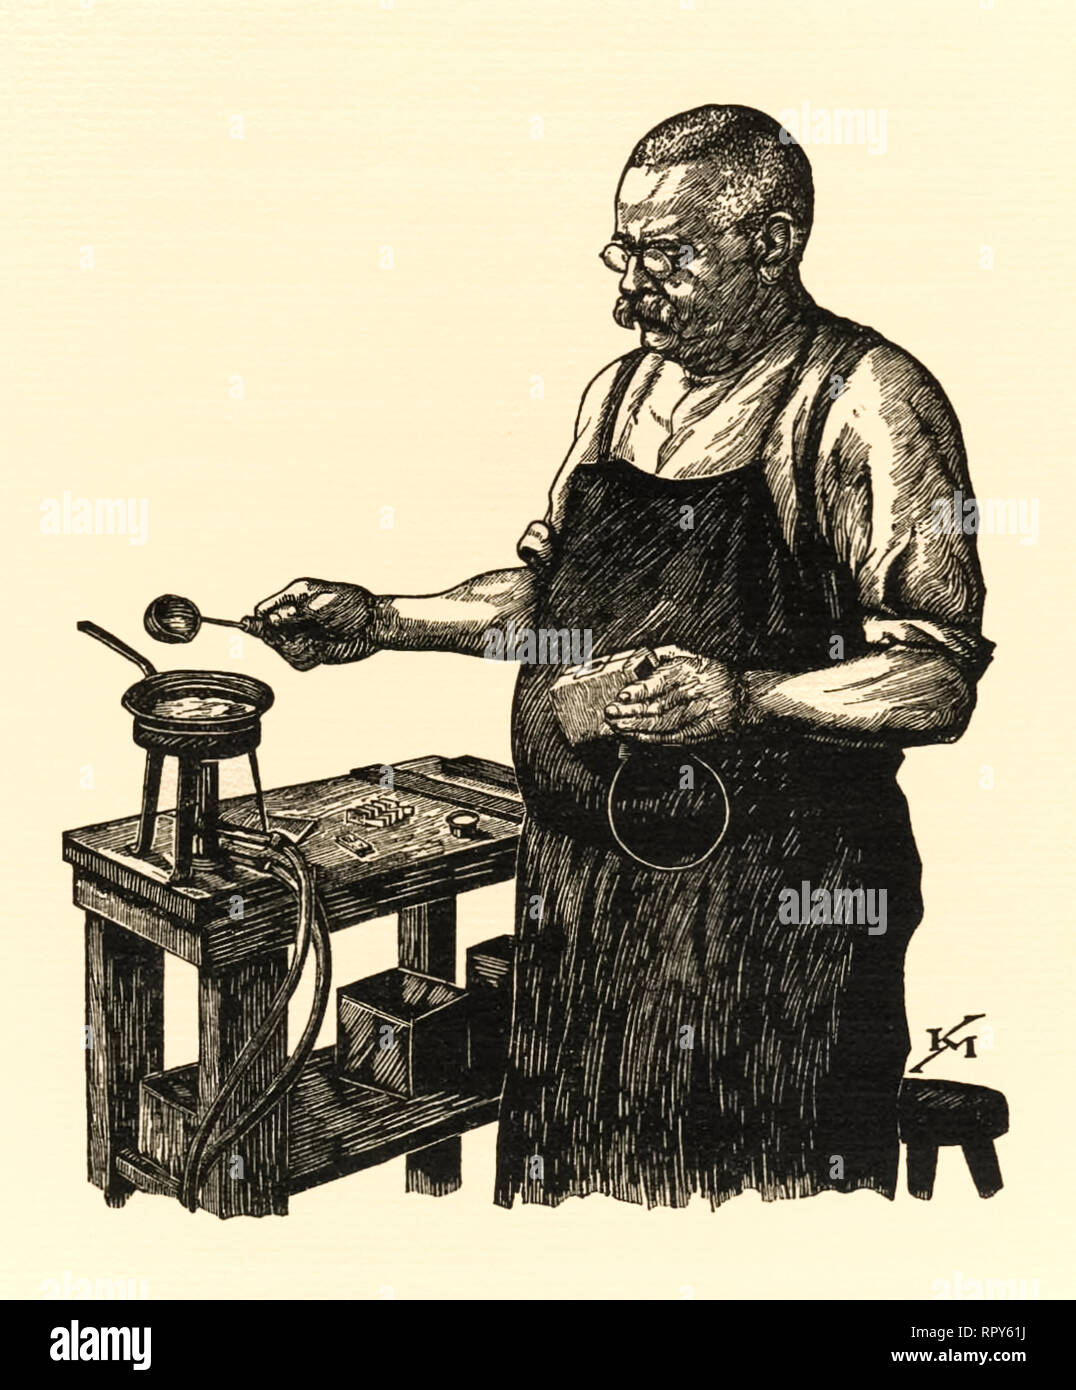 Vorbereitung aus Metall für den Einsatz in Buchdruck. Hier geschmolzenes Metall wird vorbereitet in eine Form gegossen werden, um eine glymph für den Einsatz in Hand set Metall bewegliche Art Druck zu werfen. Holzschnitt von Karl Mahr (1890-1945). Stockfoto